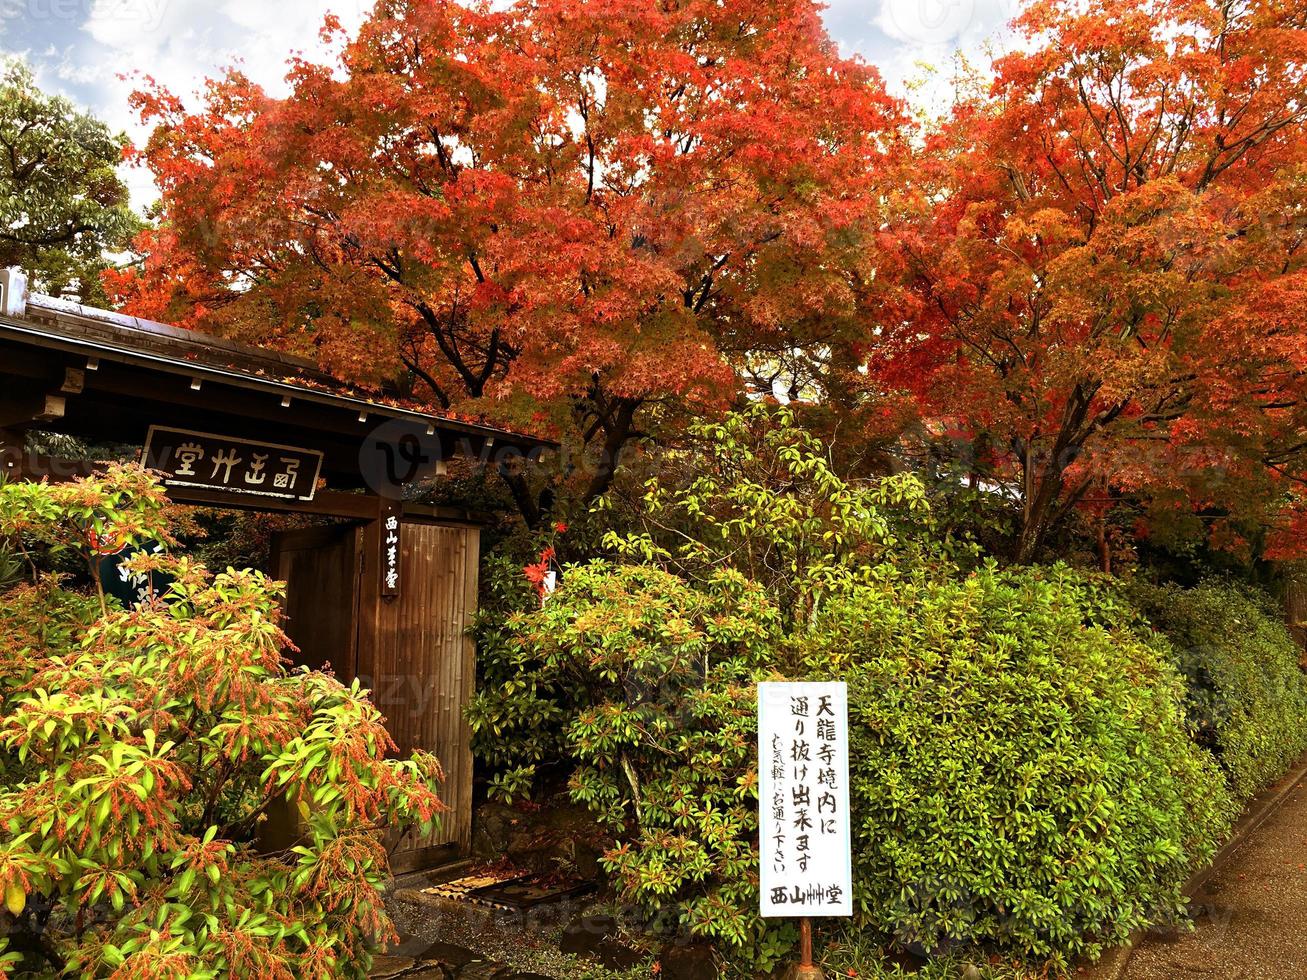 rood esdoorn- bomen met hek struiken in een traditioneel Japans huis. foto